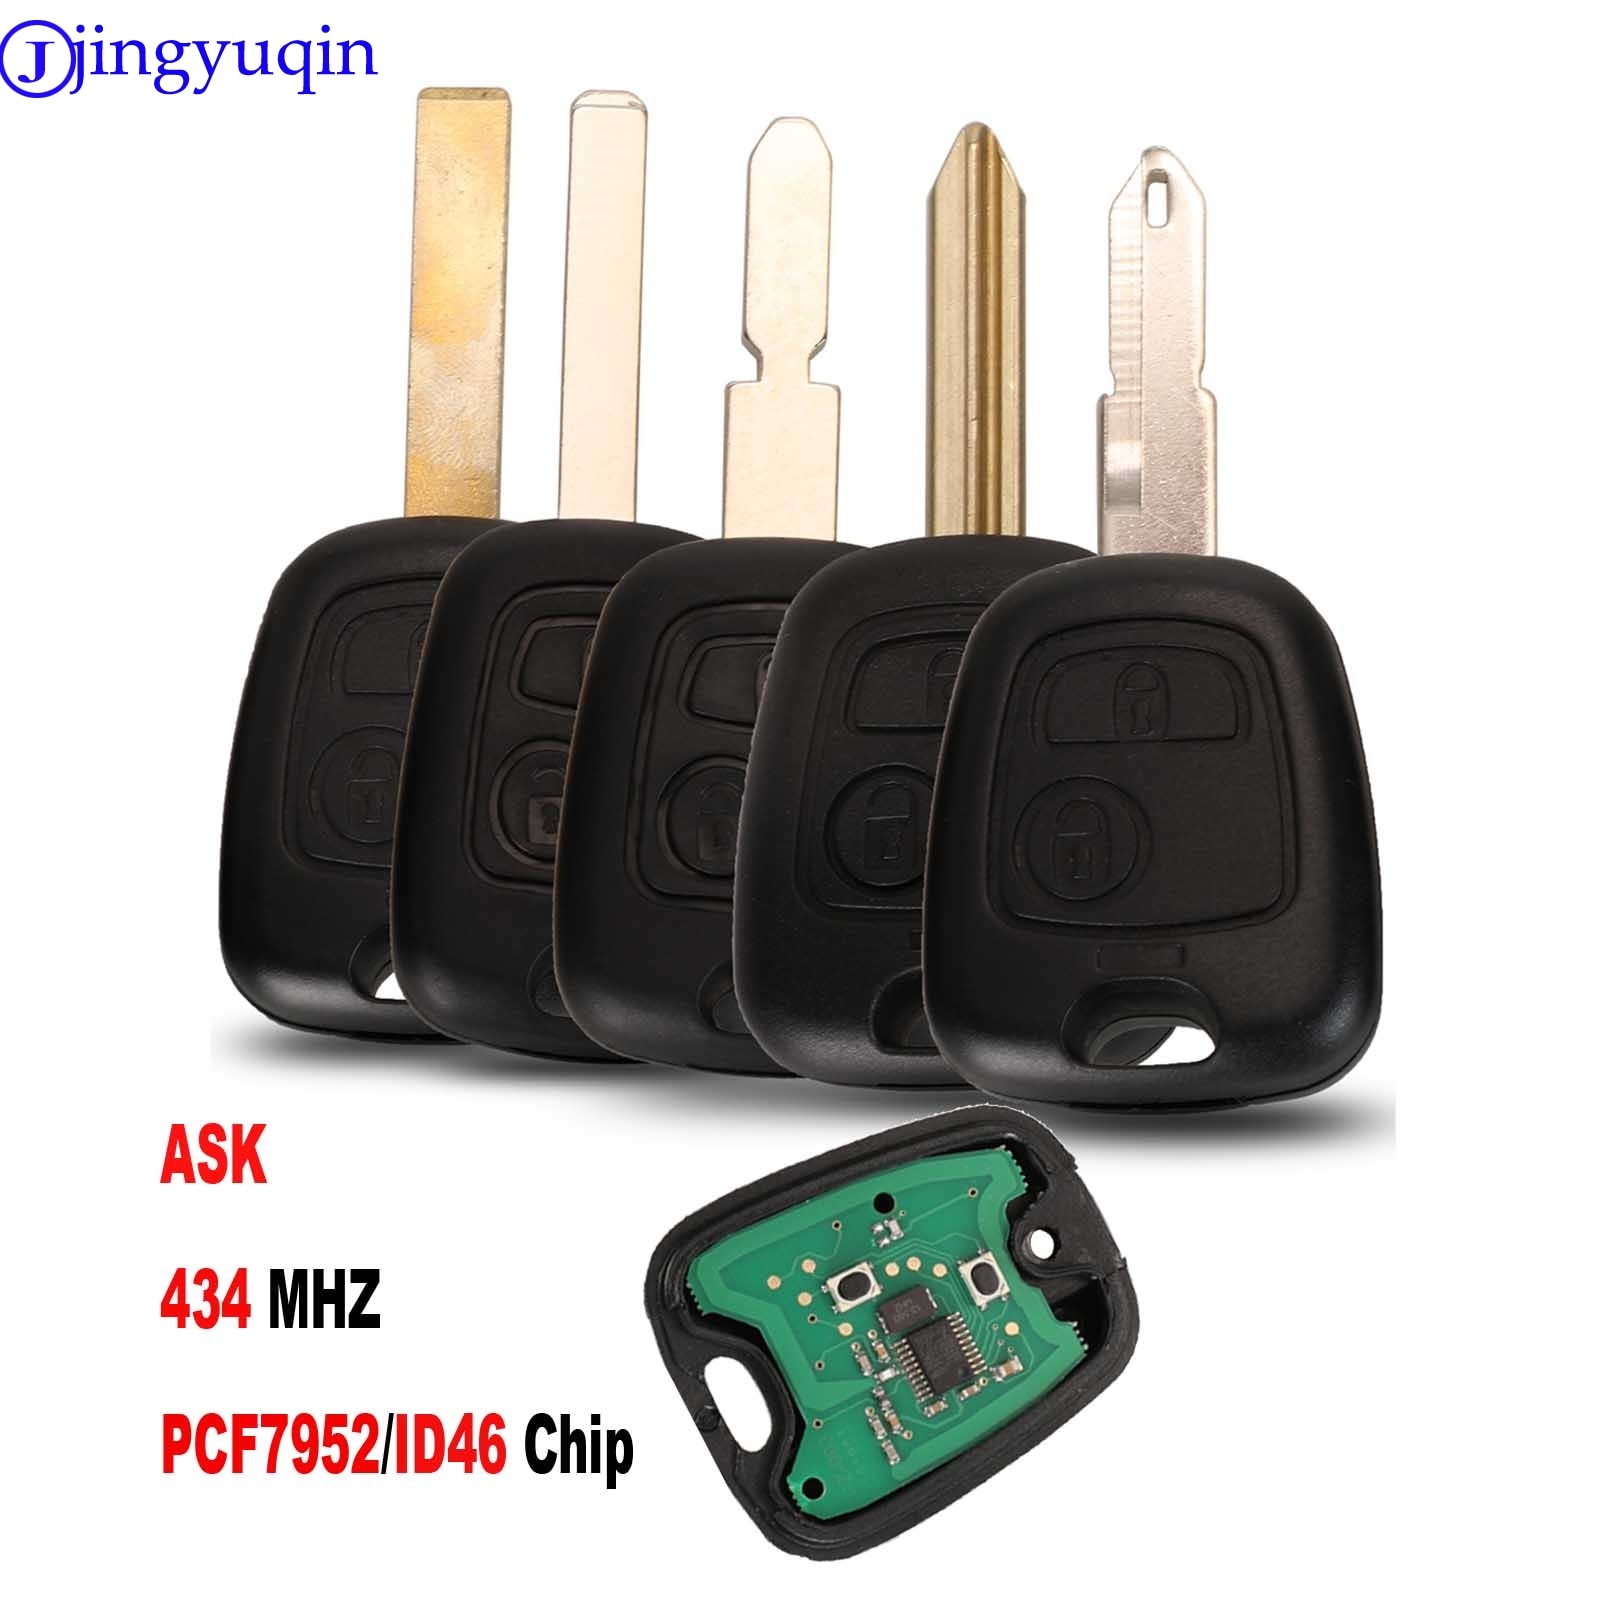 Jingyuqin 2 Knoppen Vragen Afstandsbediening Sleutelhanger Controller Voor Peugeot 206 433Mhz Met PCF7961 Transponder Chip